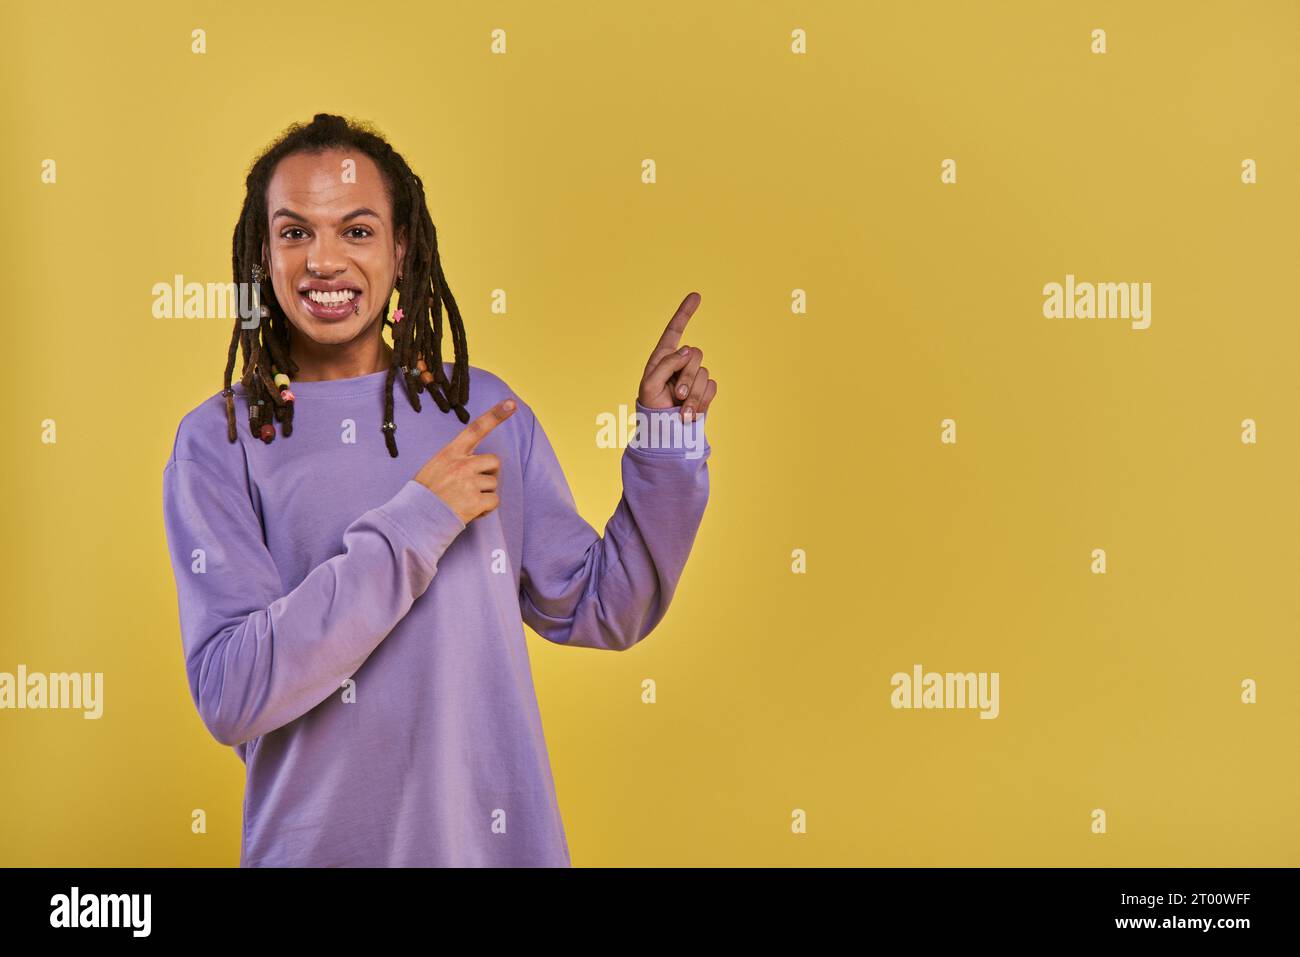 homme afro-américain joyeux avec dreadlocks percé lèvre pointant sur le côté droit sur fond jaune Banque D'Images